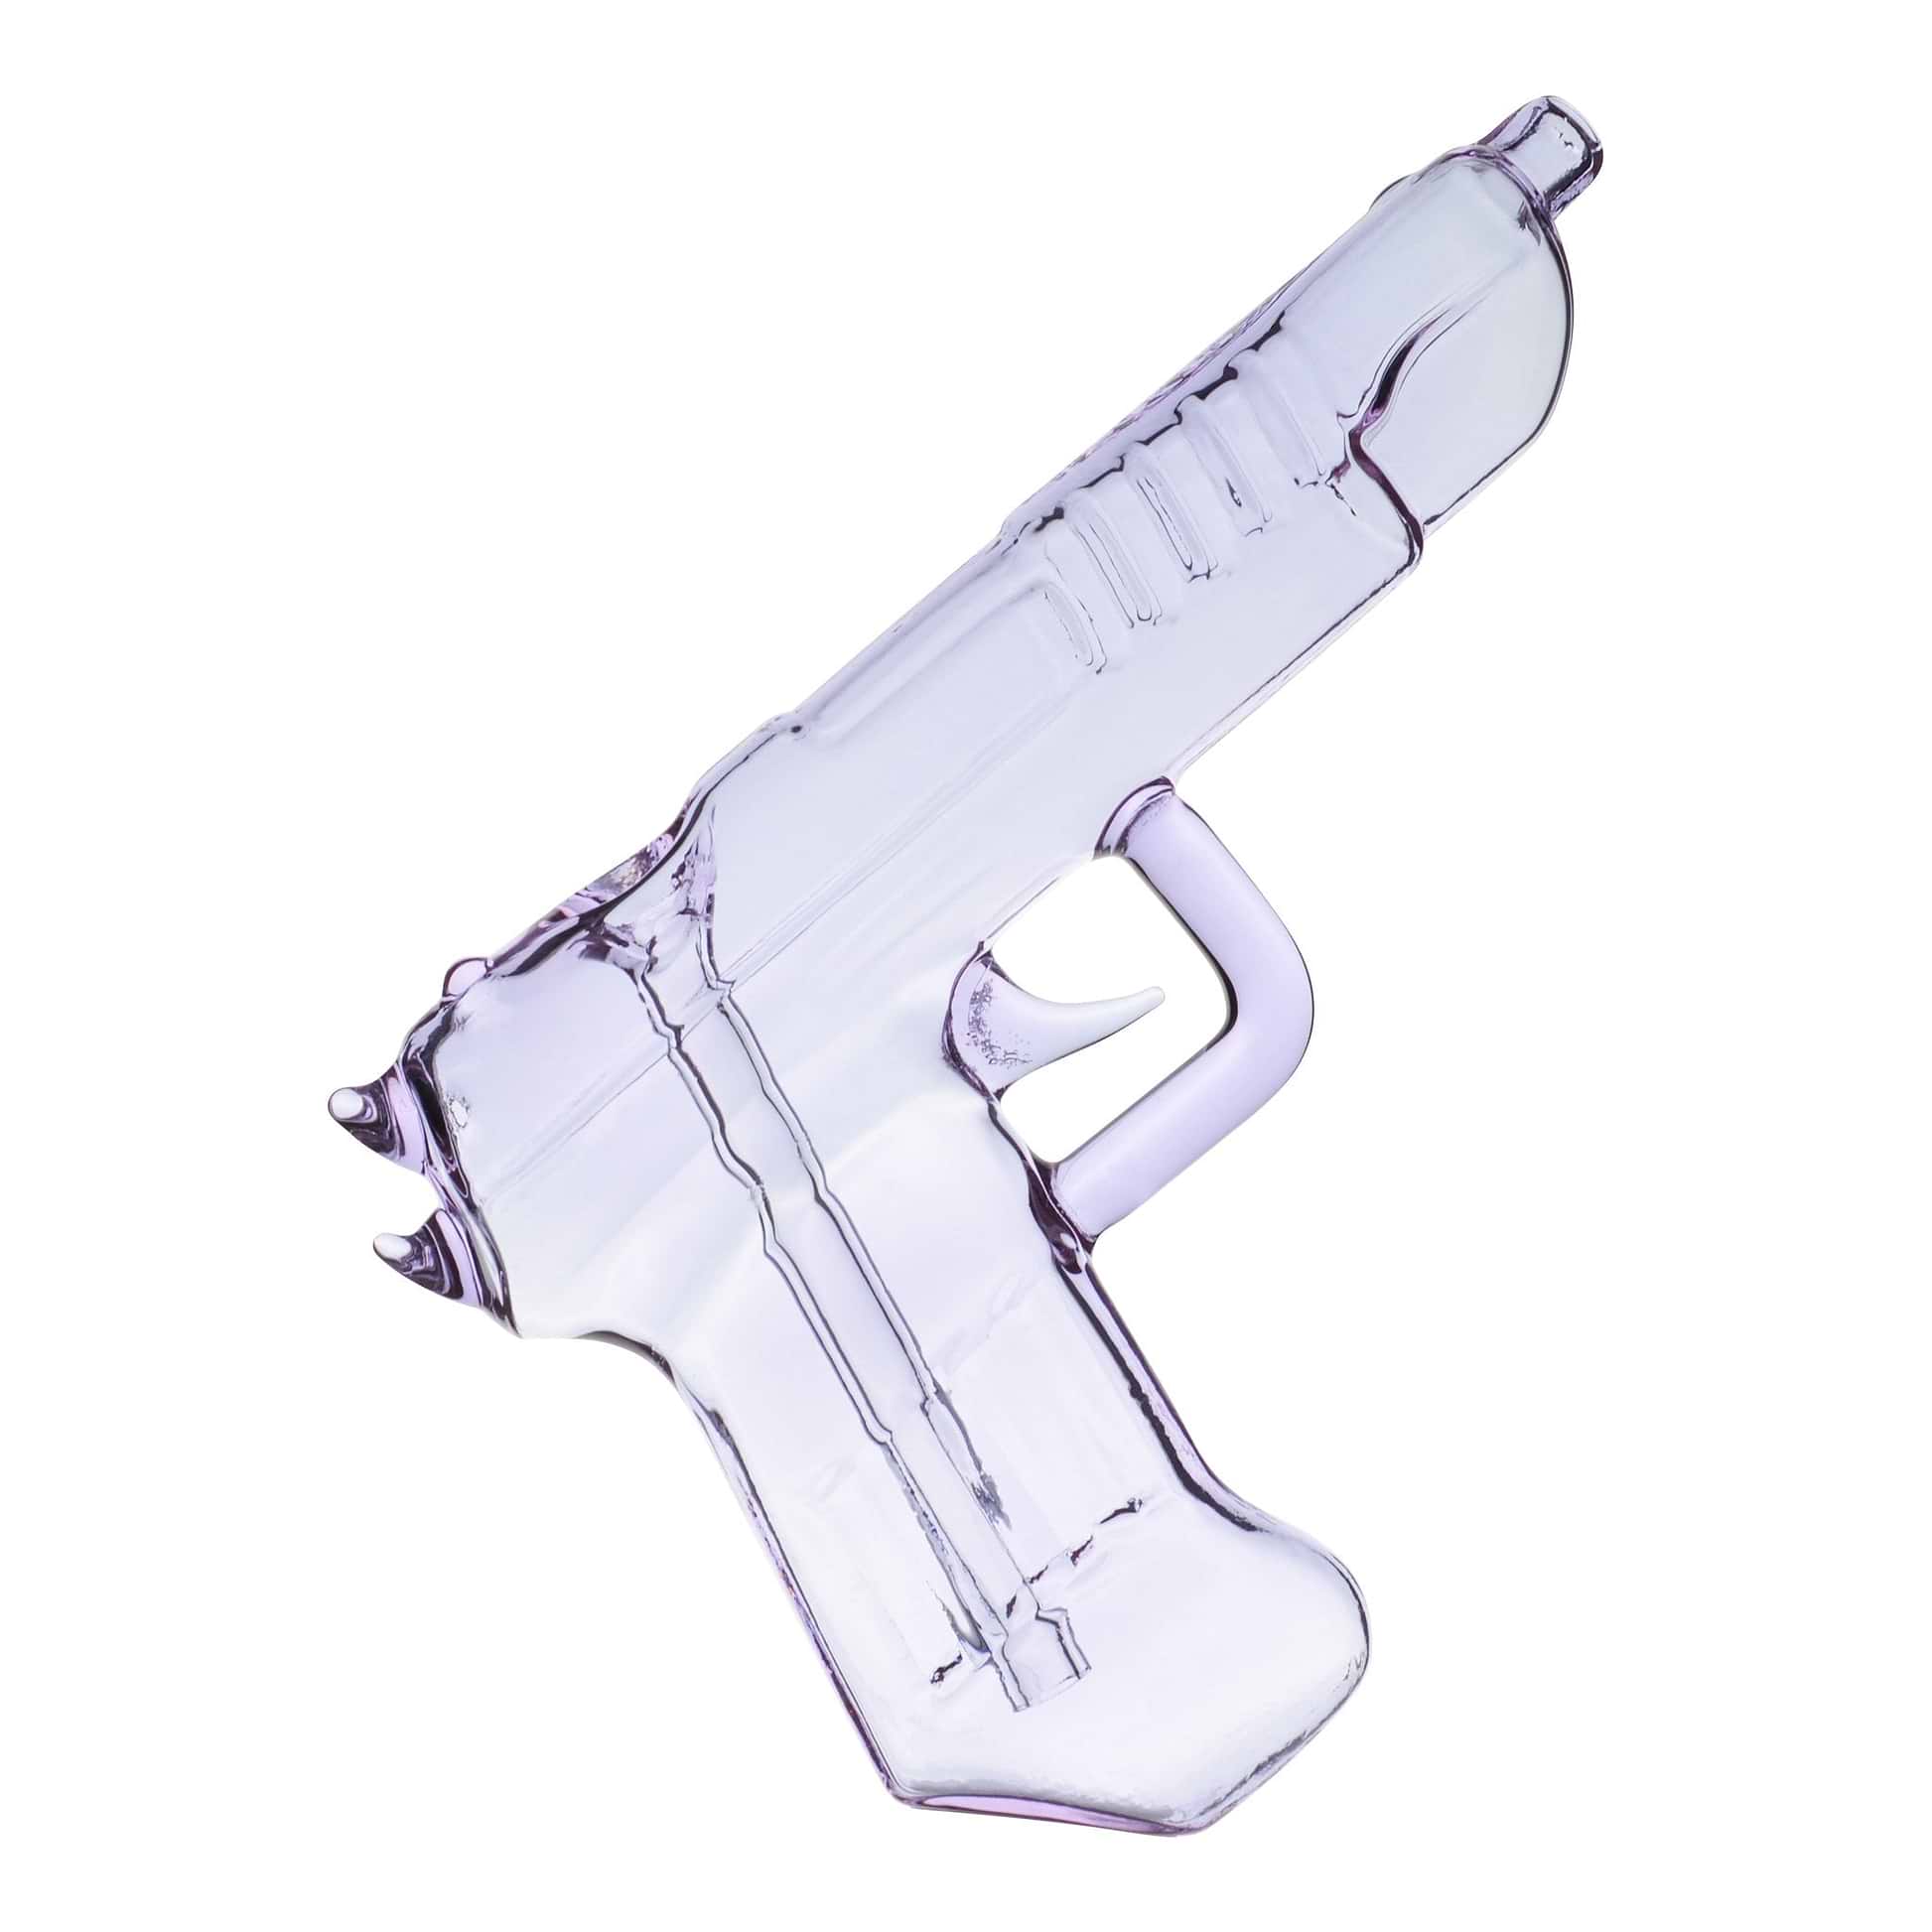 Pistol Bubbler - 7.5in